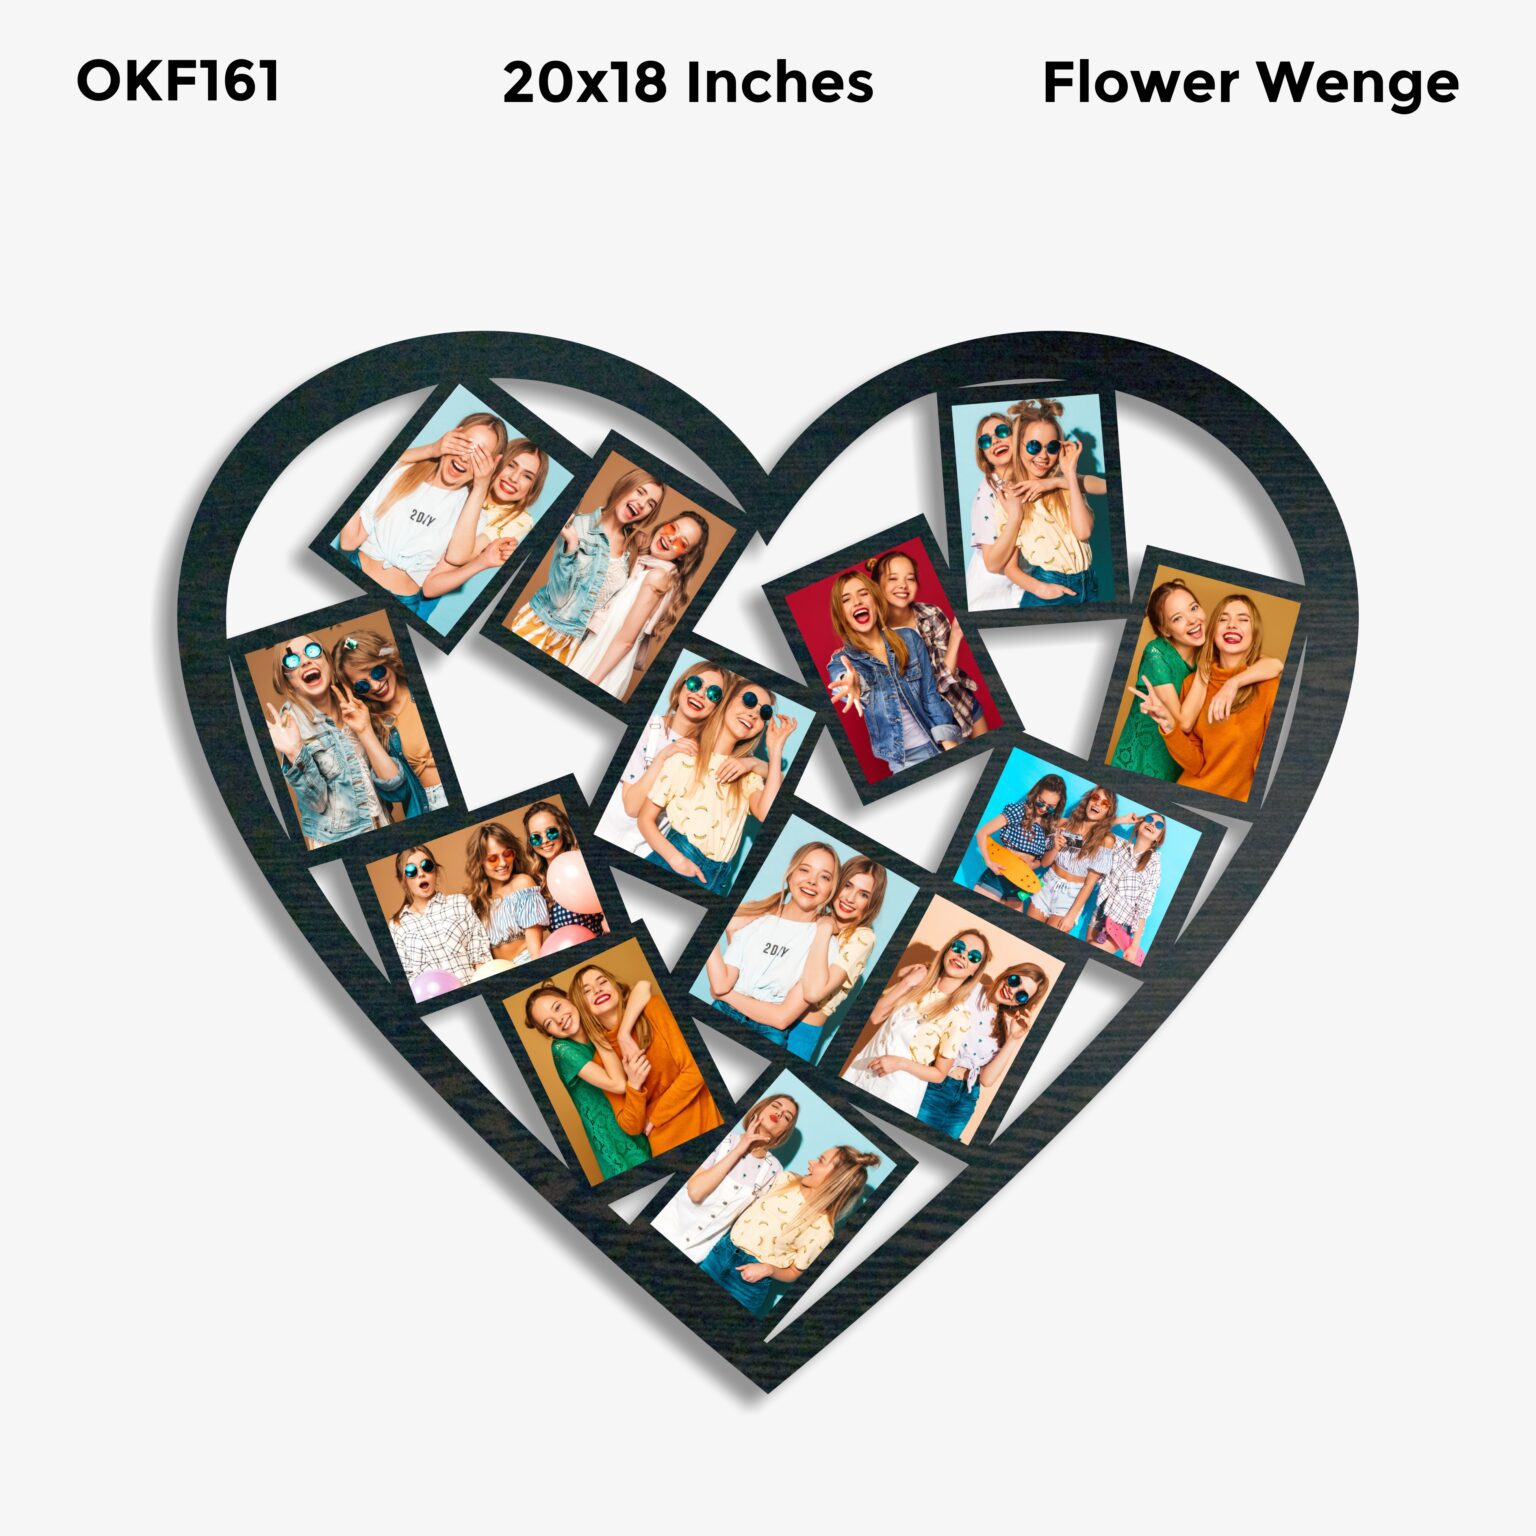 Heart Shaped Photo Frame OKF161